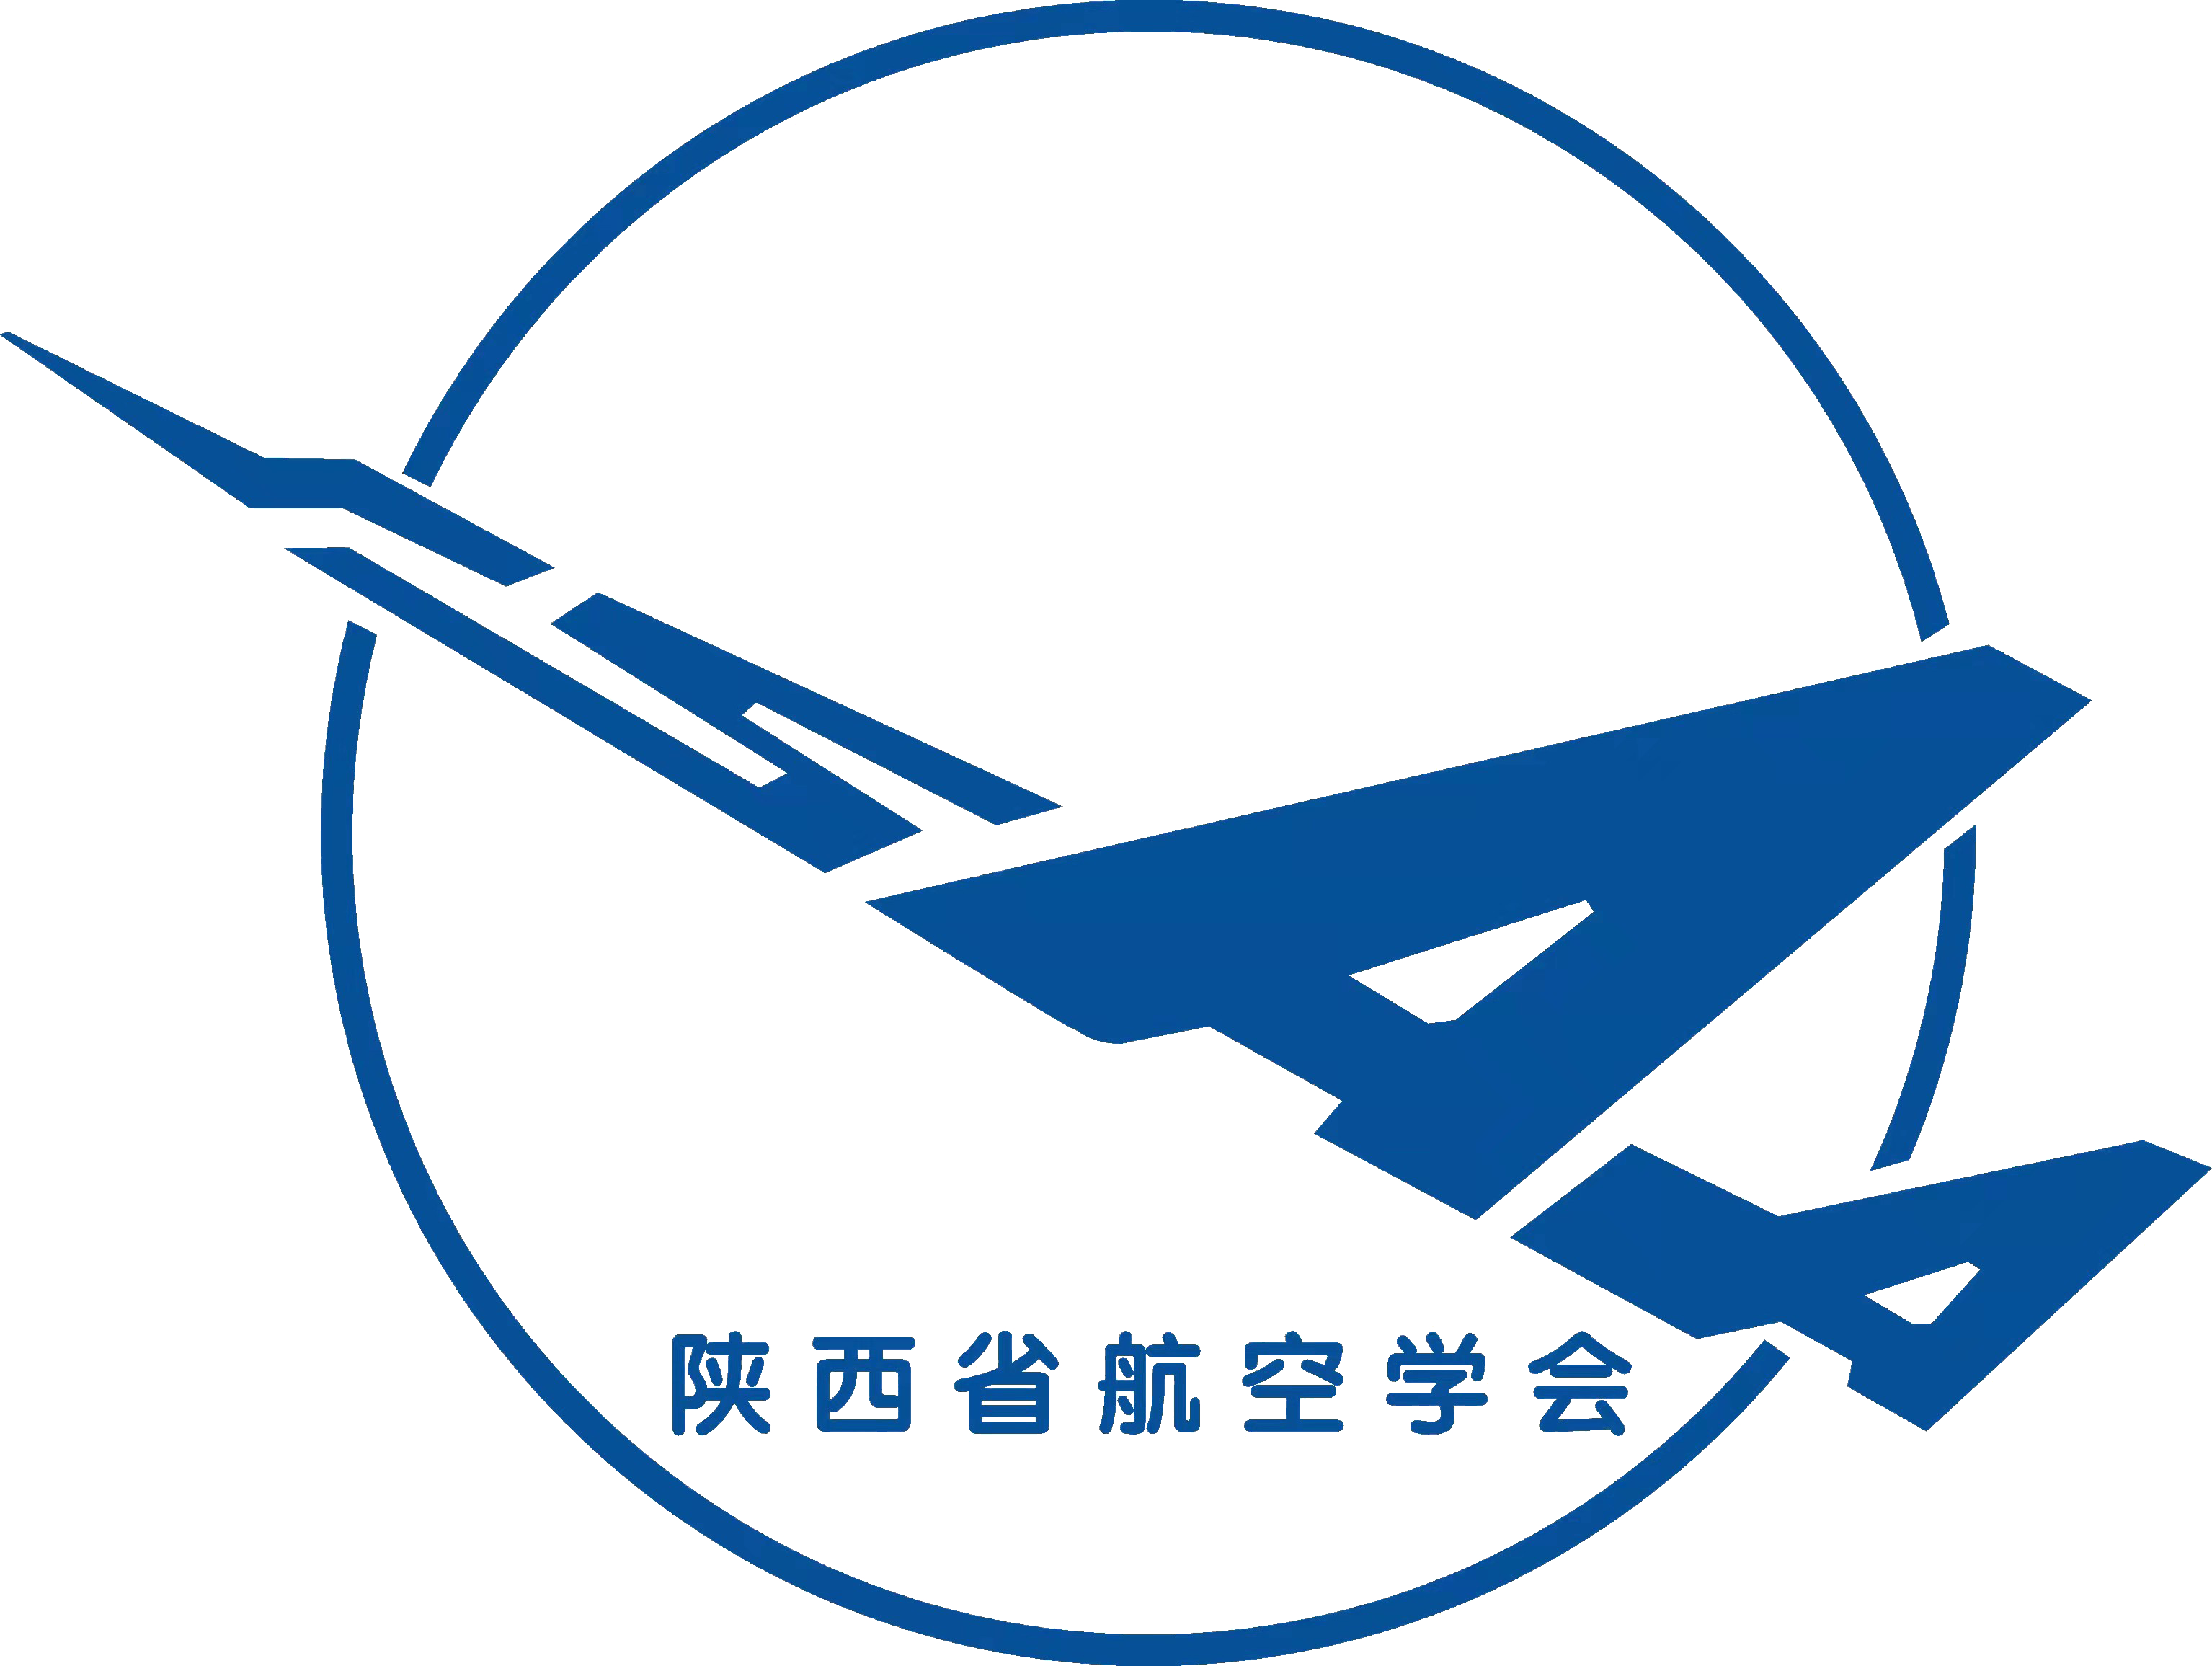 西安航空标志图片